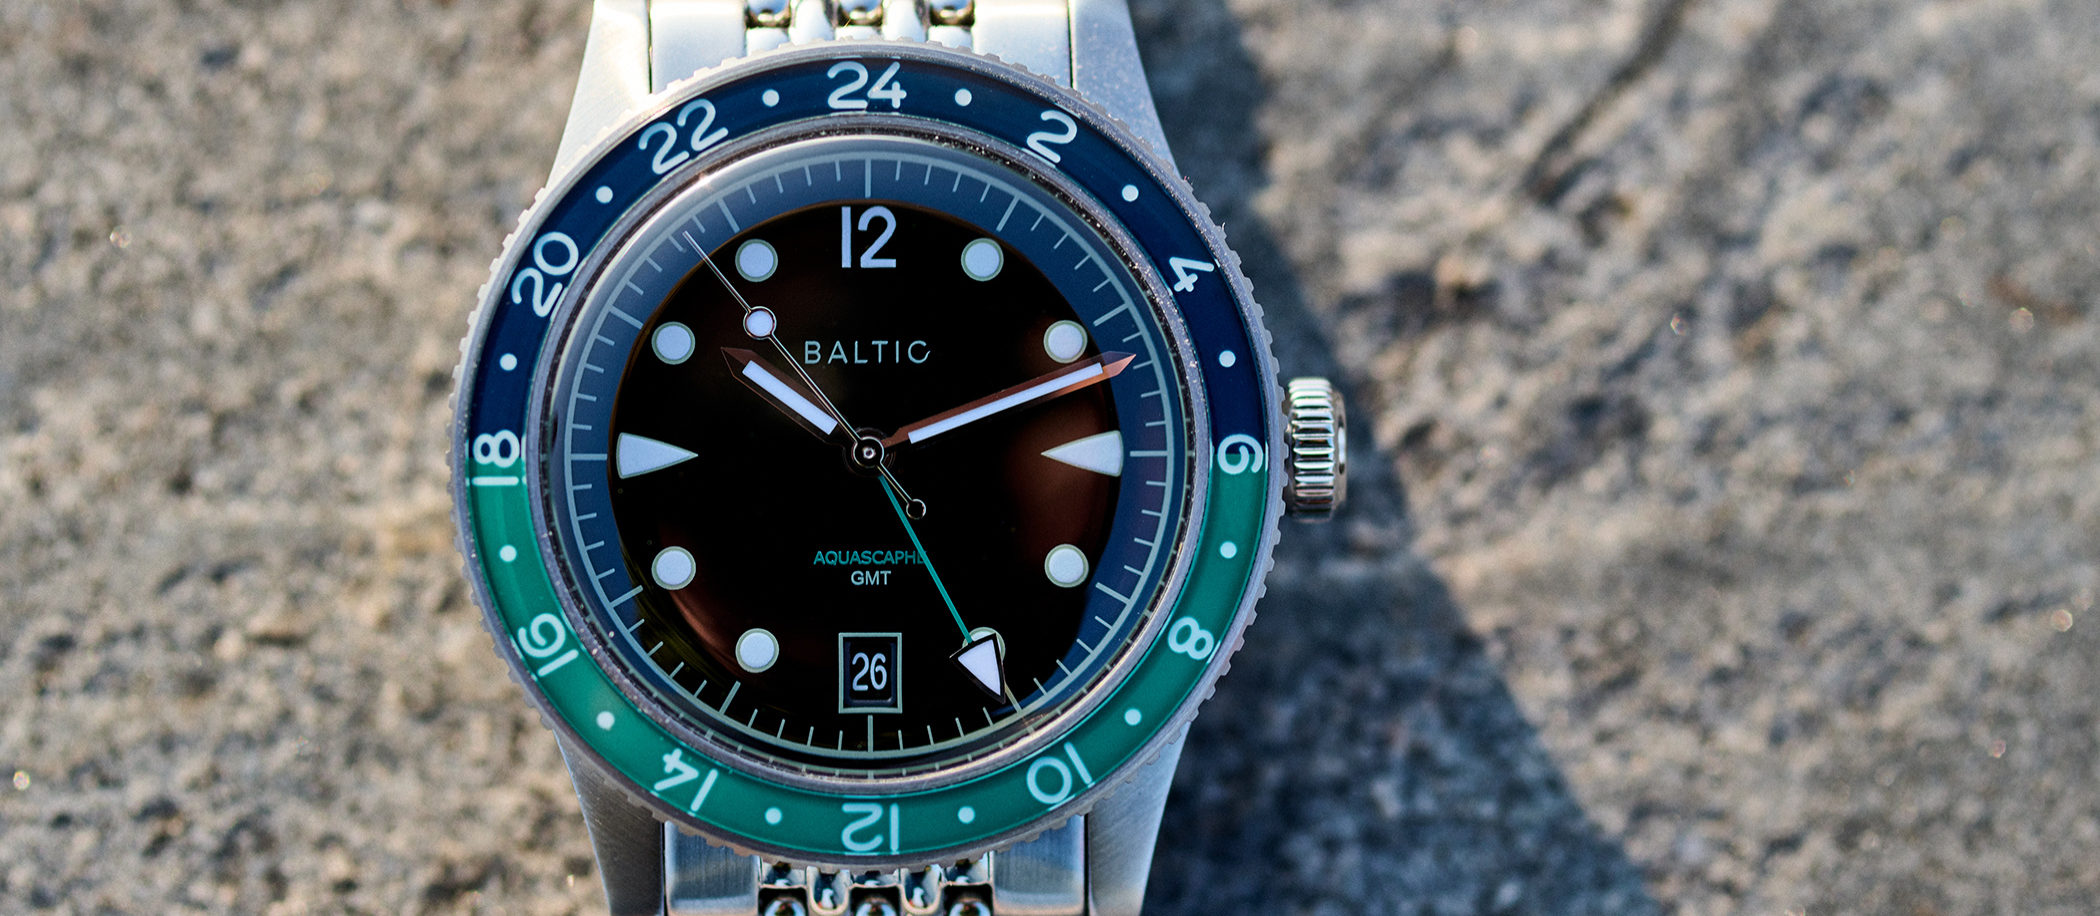 Baltic Aquascaphe GMT